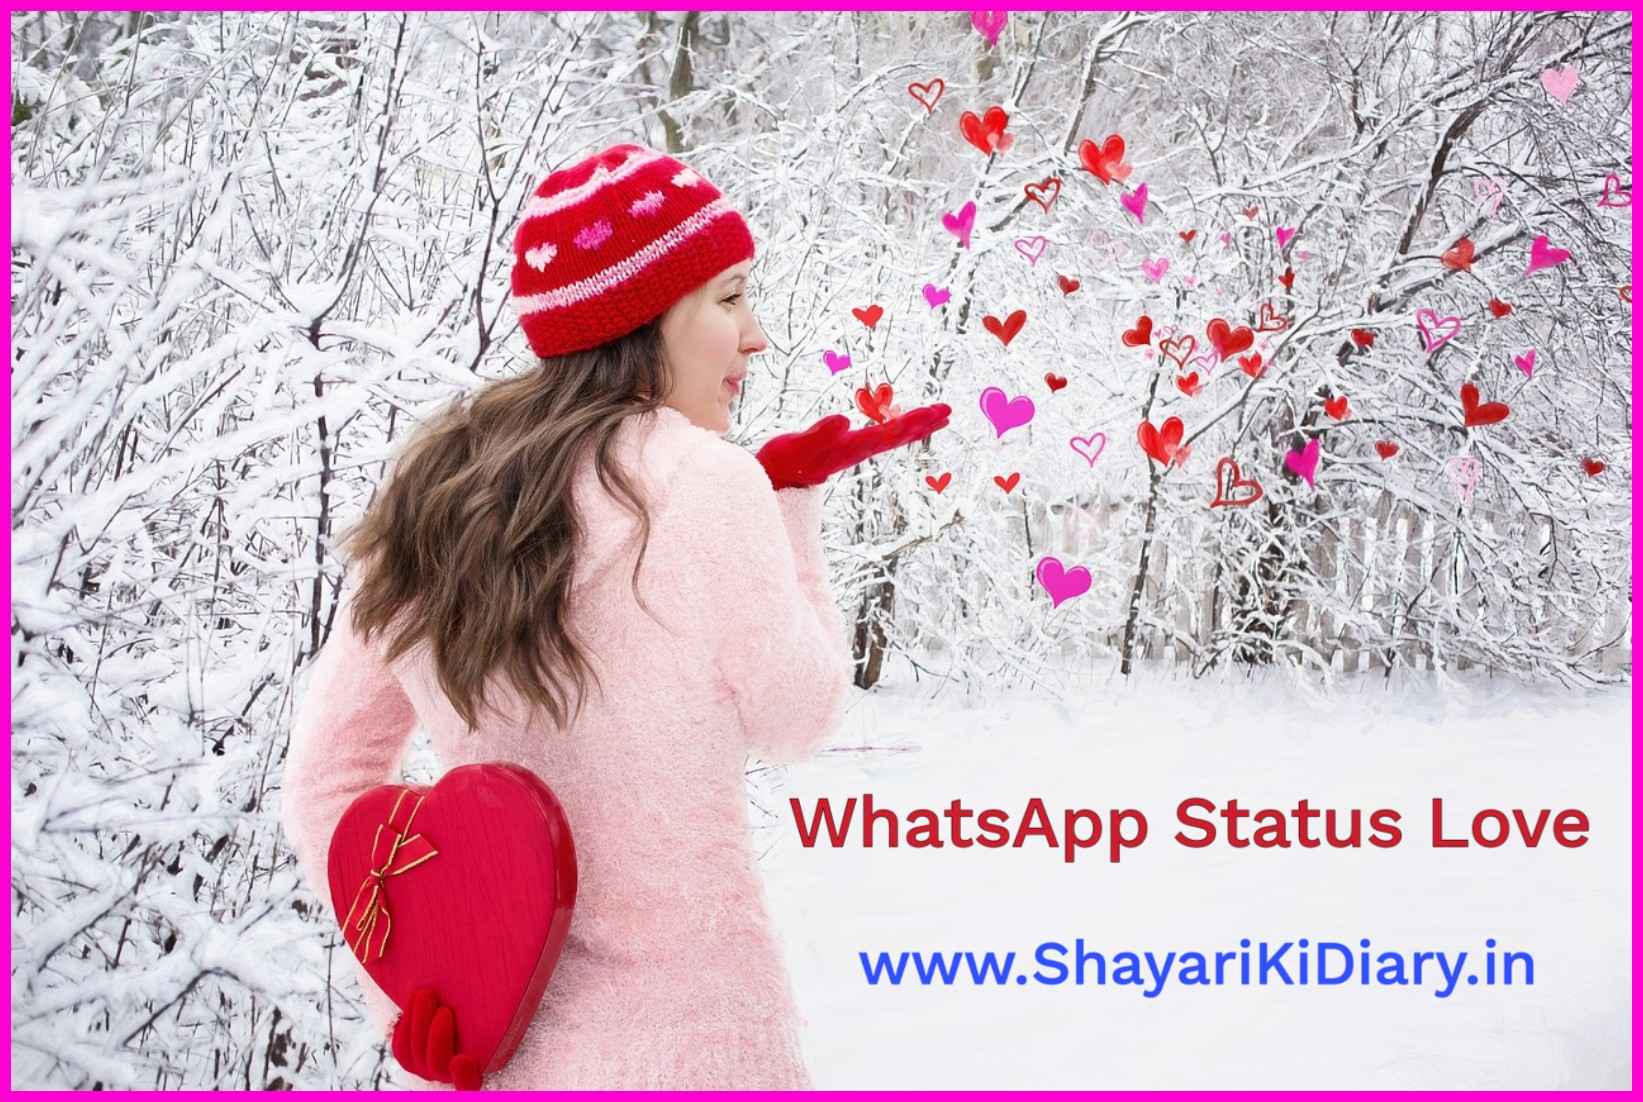 WhatsApp Status Love